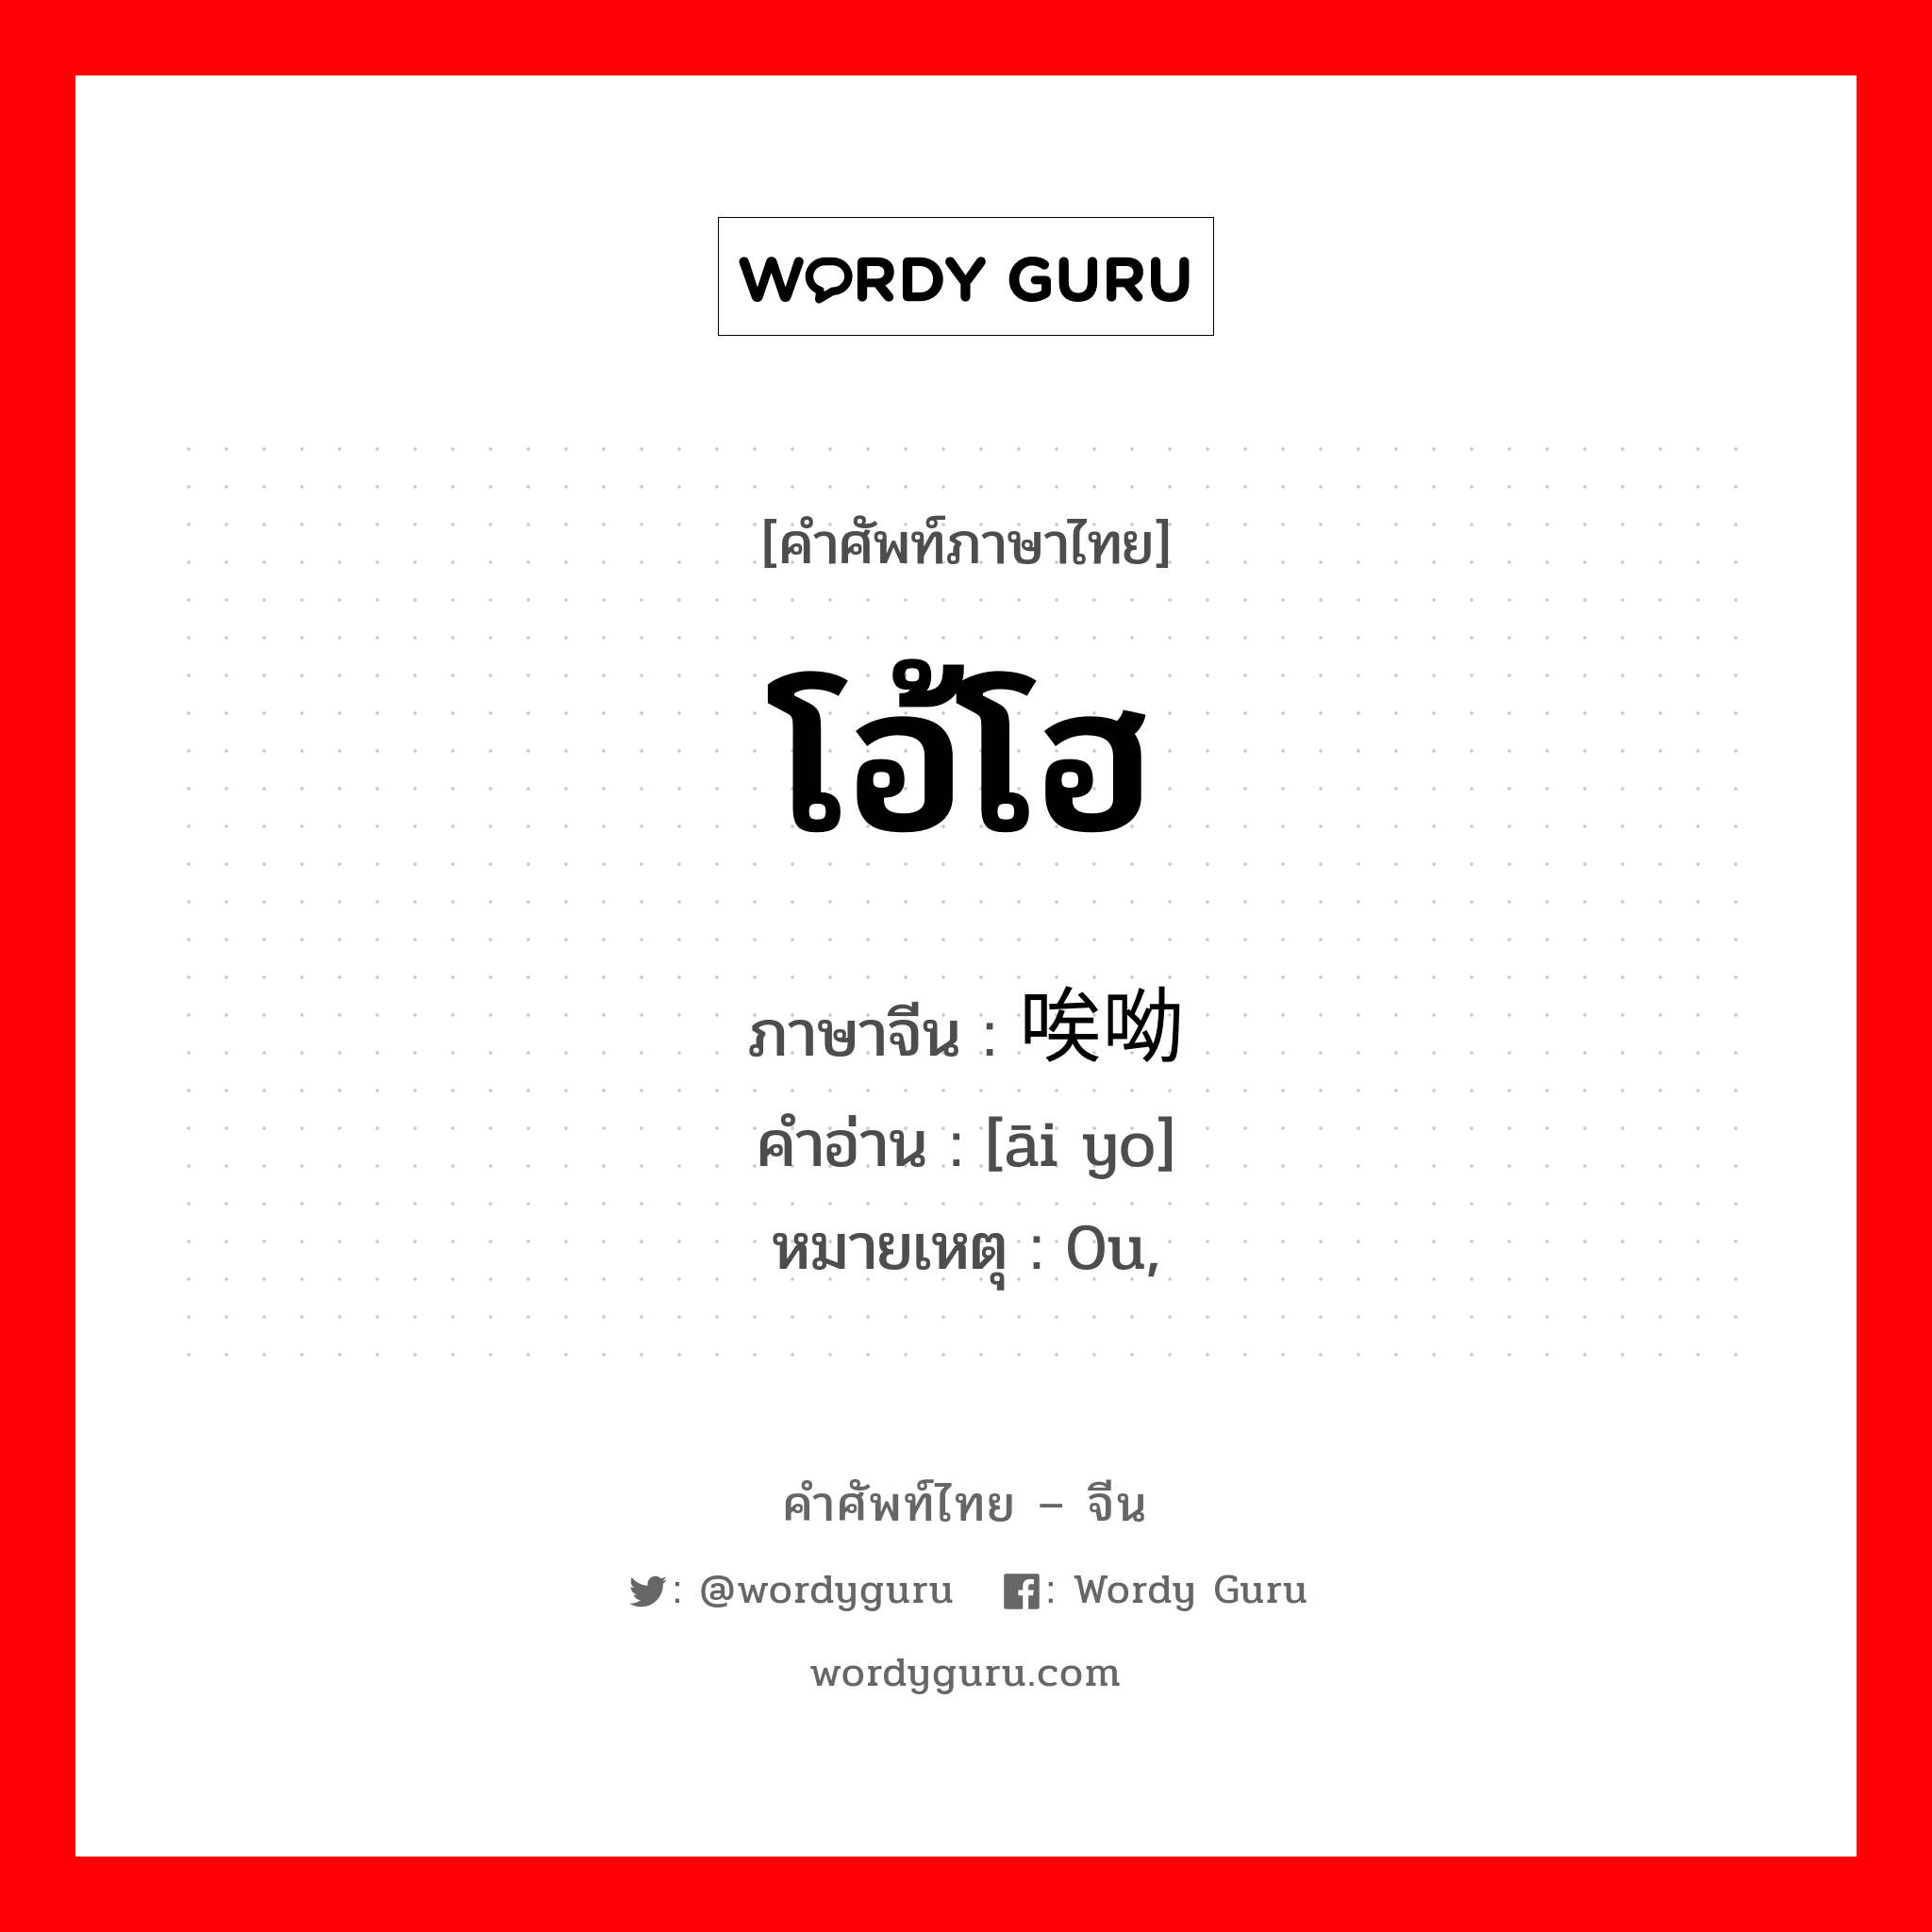 唉呦 ภาษาไทย?, คำศัพท์ภาษาไทย - จีน 唉呦 ภาษาจีน โอ้โฮ คำอ่าน [āi yo] หมายเหตุ 0u,